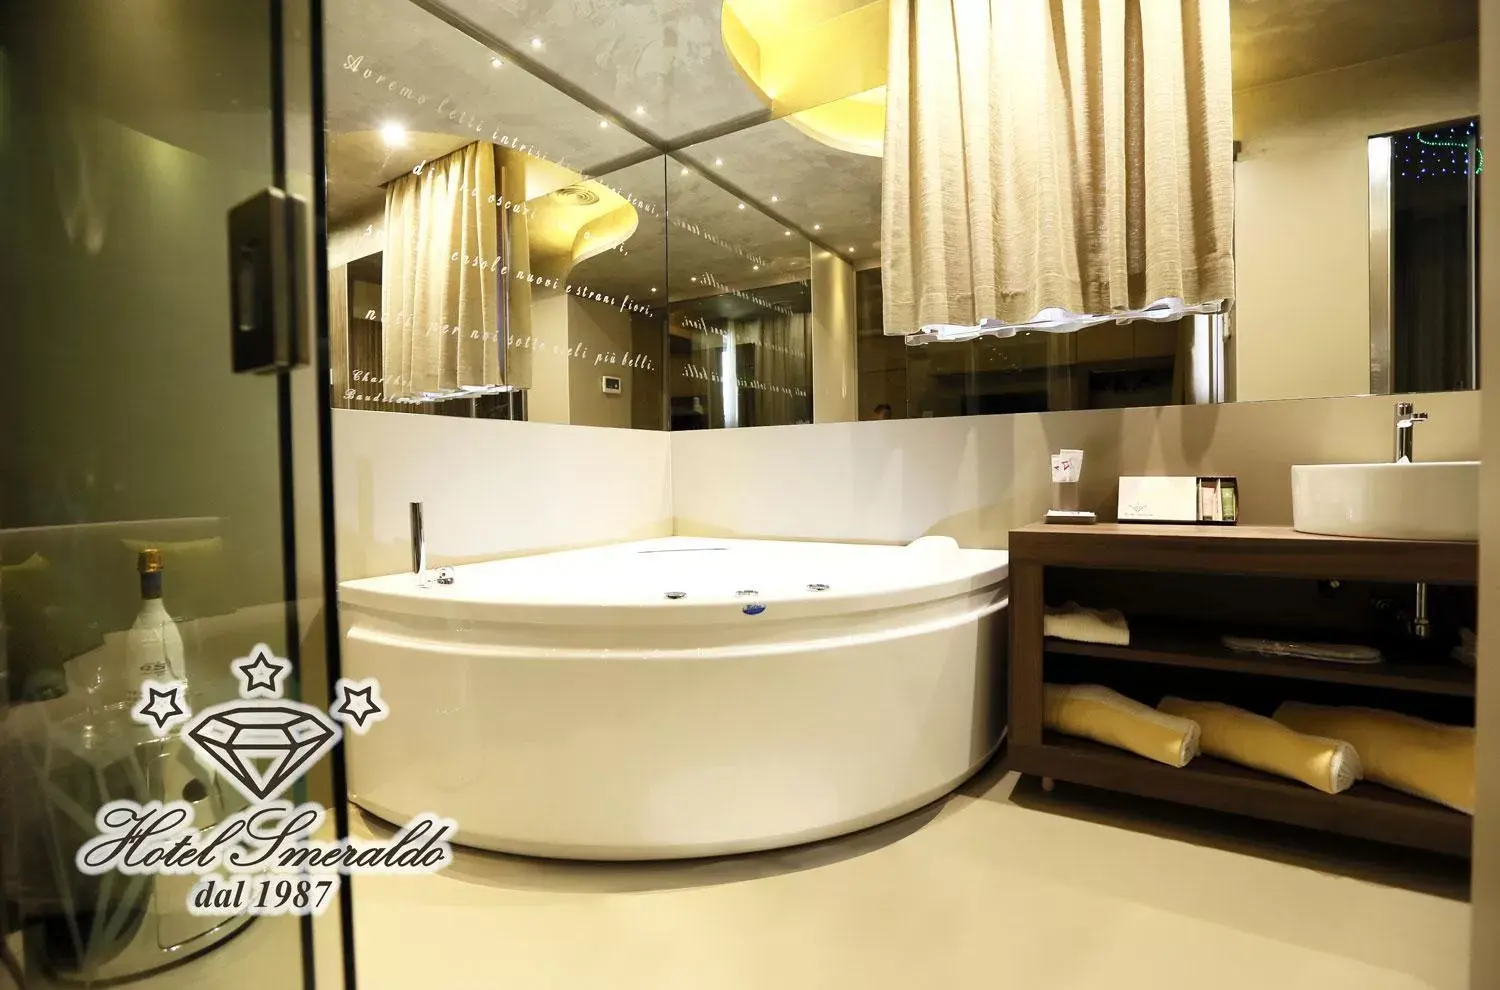 Decorative detail, Bathroom in Hotel Smeraldo